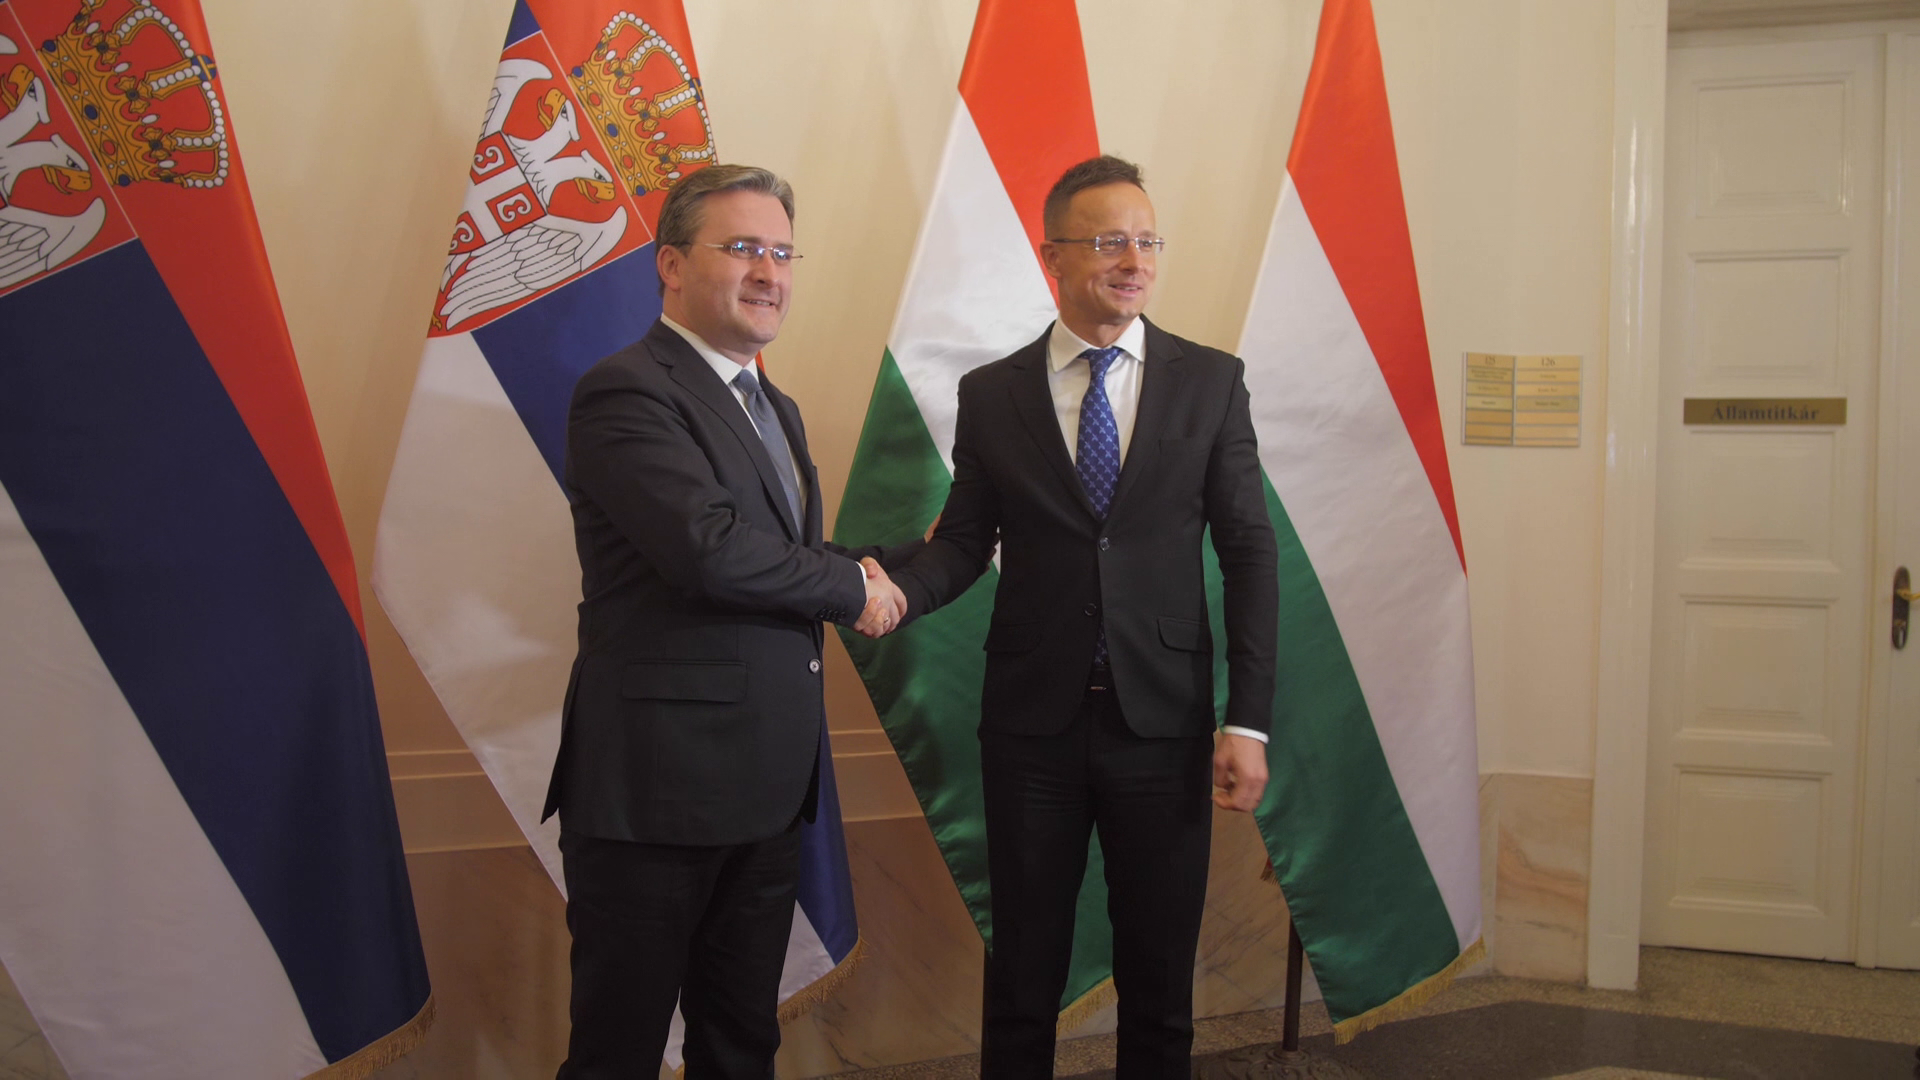 Magyar-szerb együttműködés a migrációval szemben